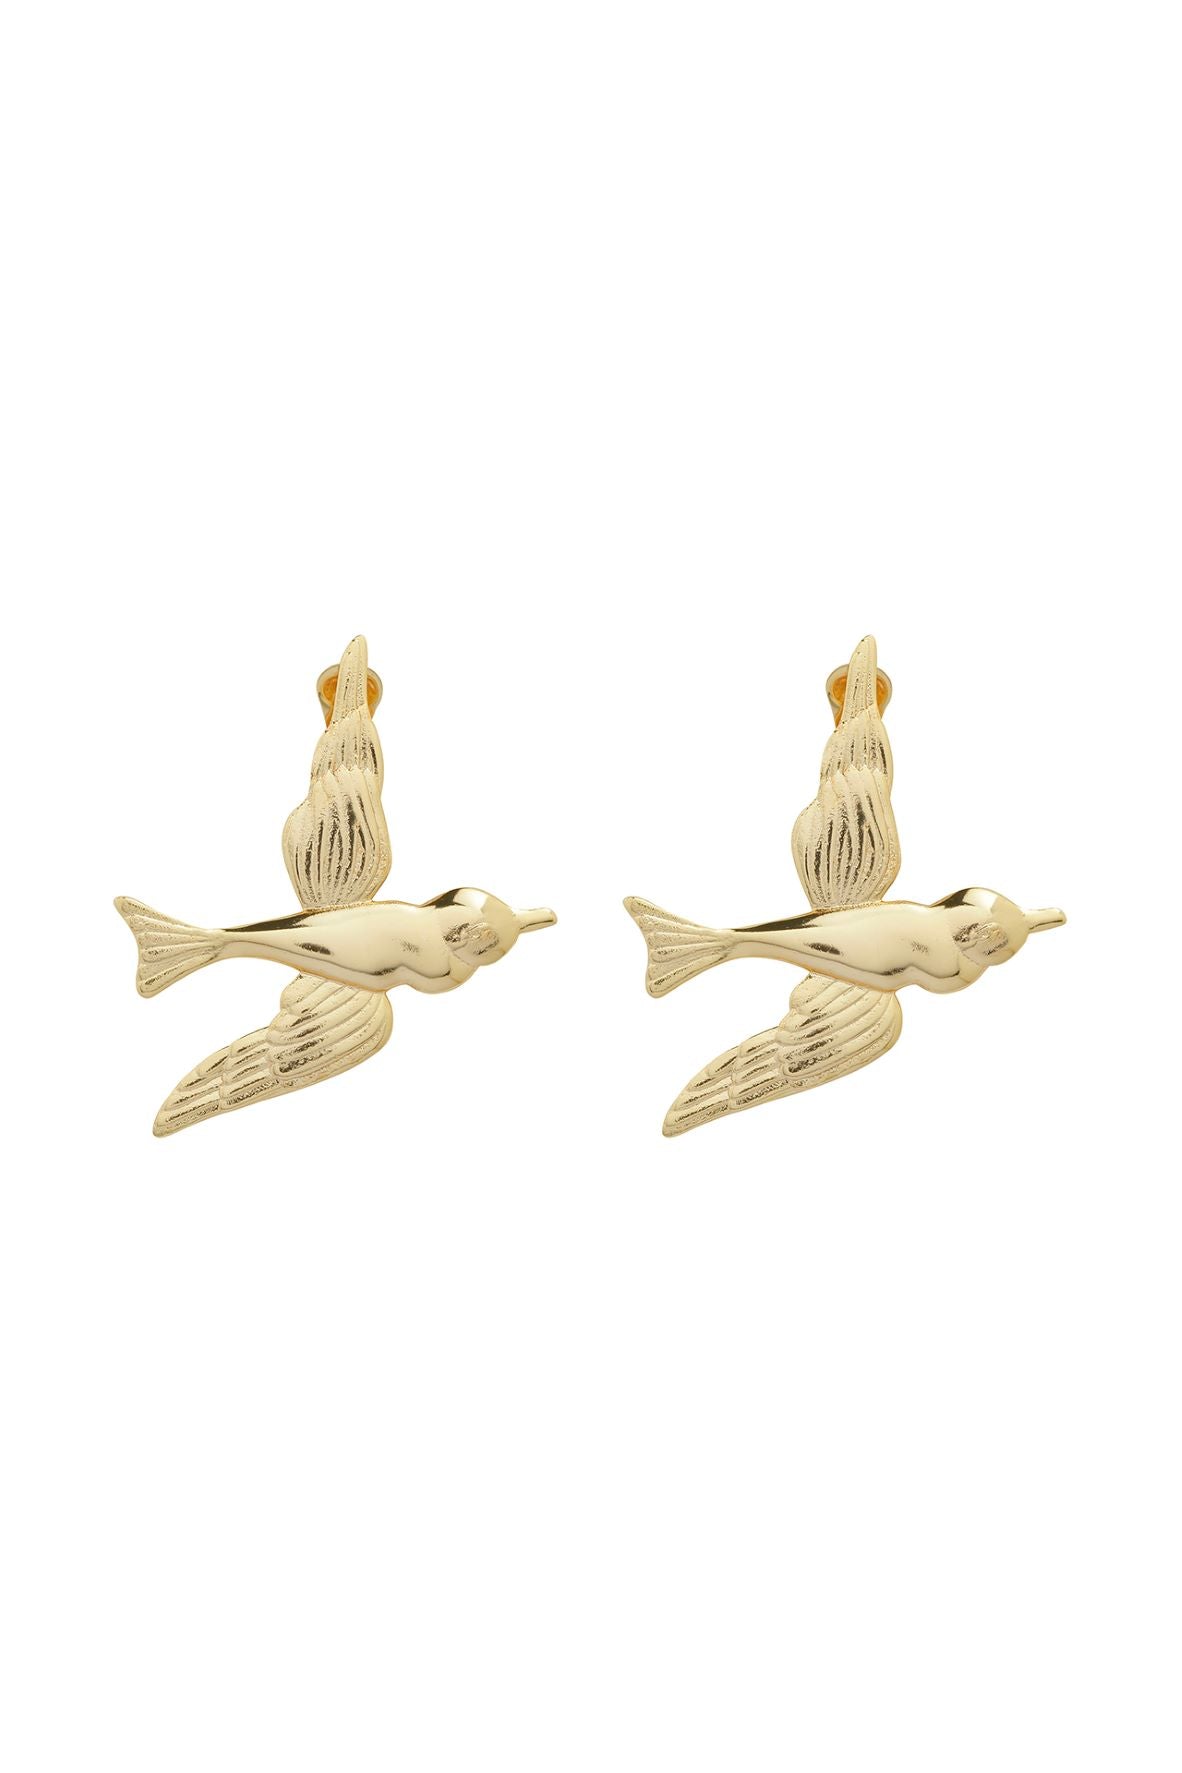 GOLD BIRD EARRINGS